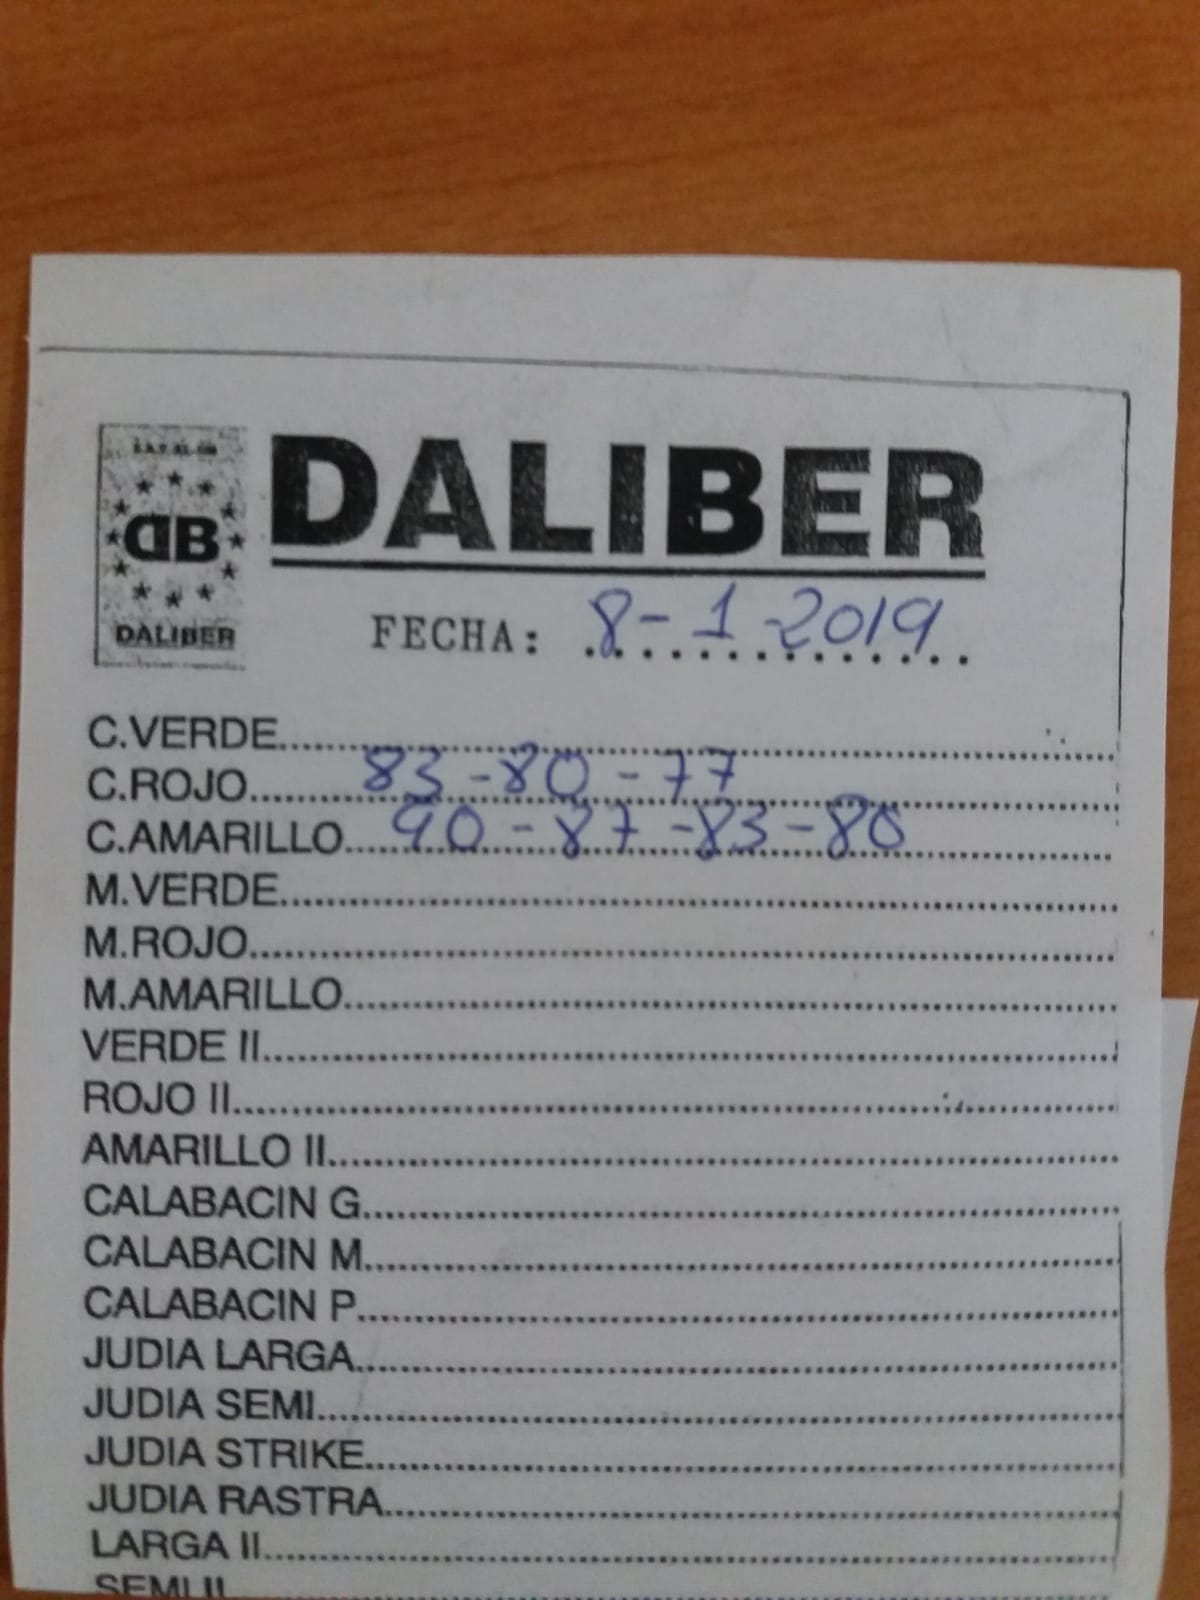 Subasta hortofrutícola Daliber 8 de Enero 2019